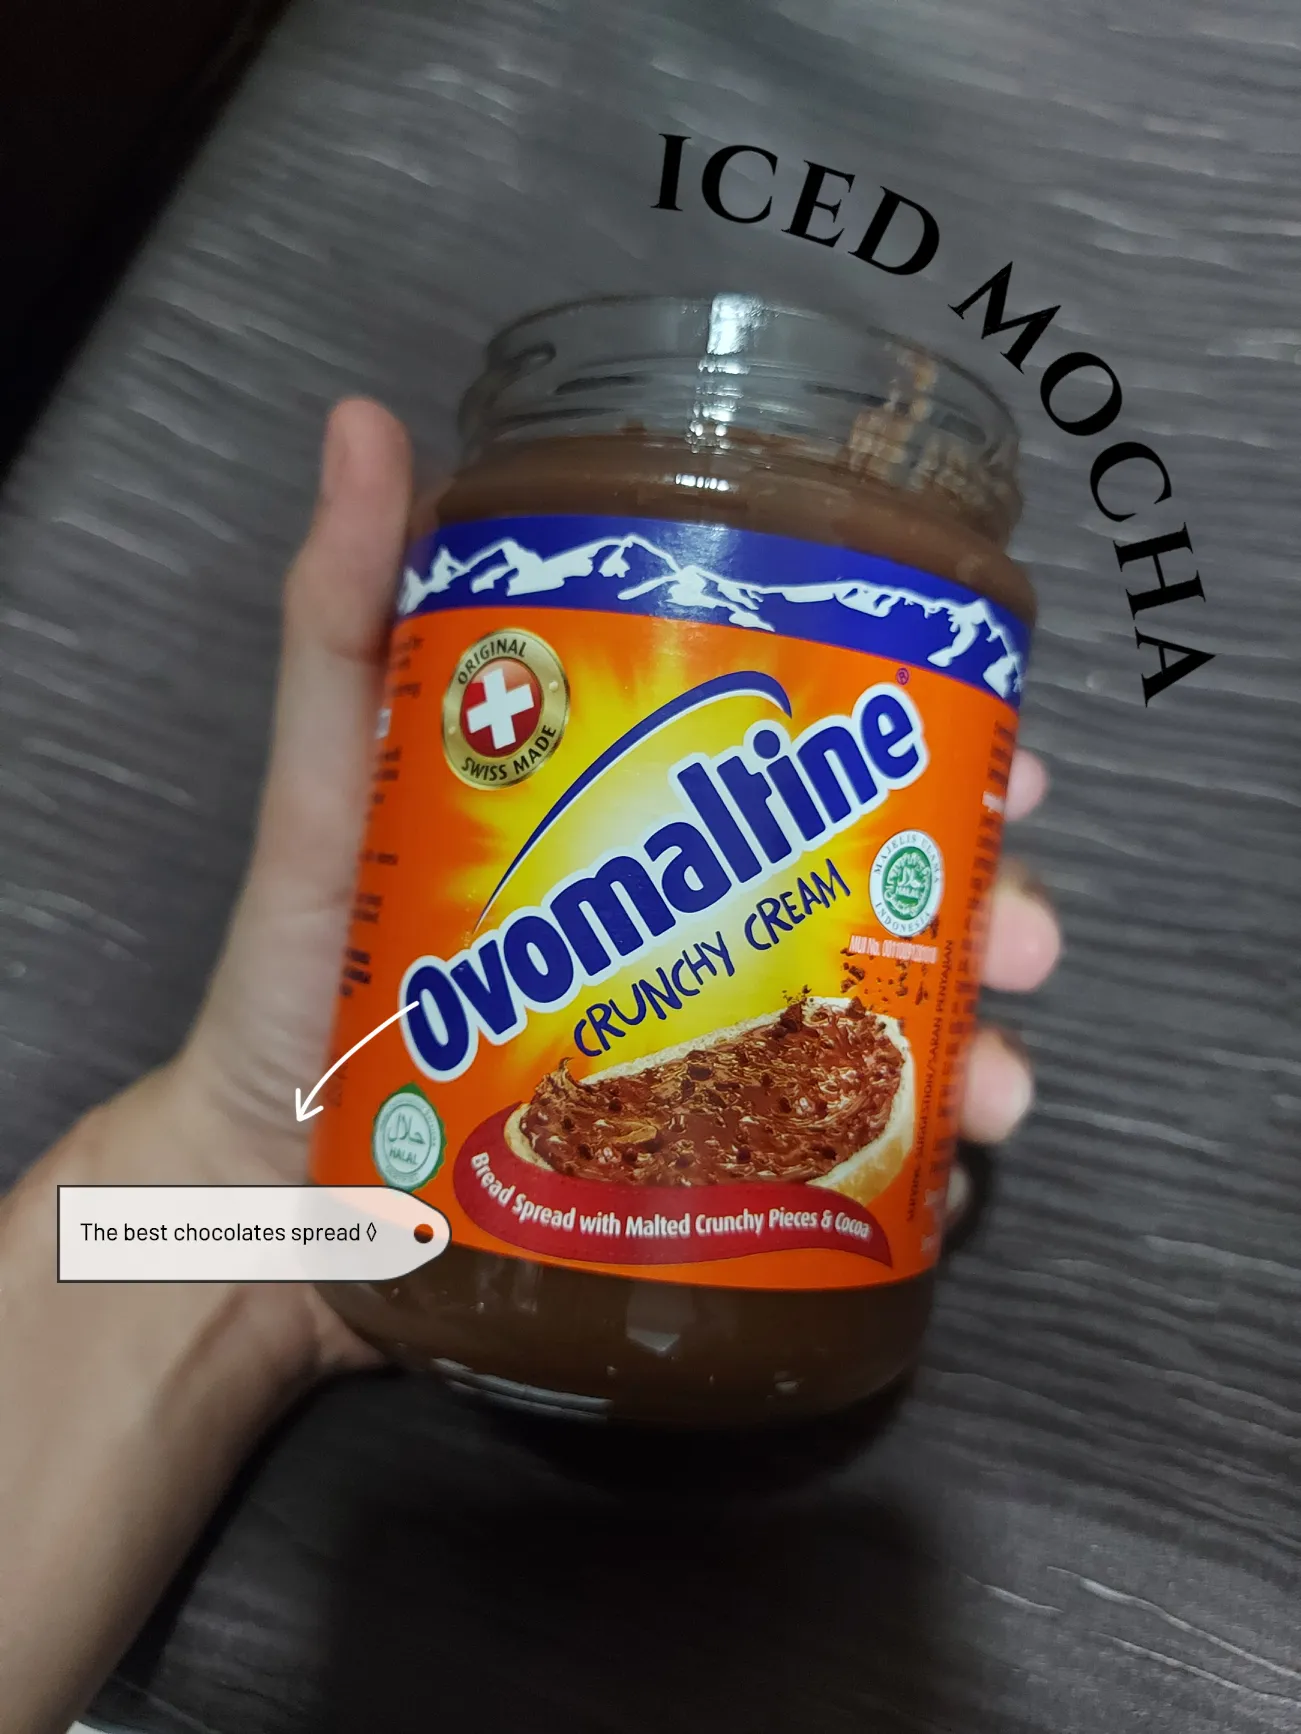 Crunchy Cream Ovomaltine / Sweet Spreads 